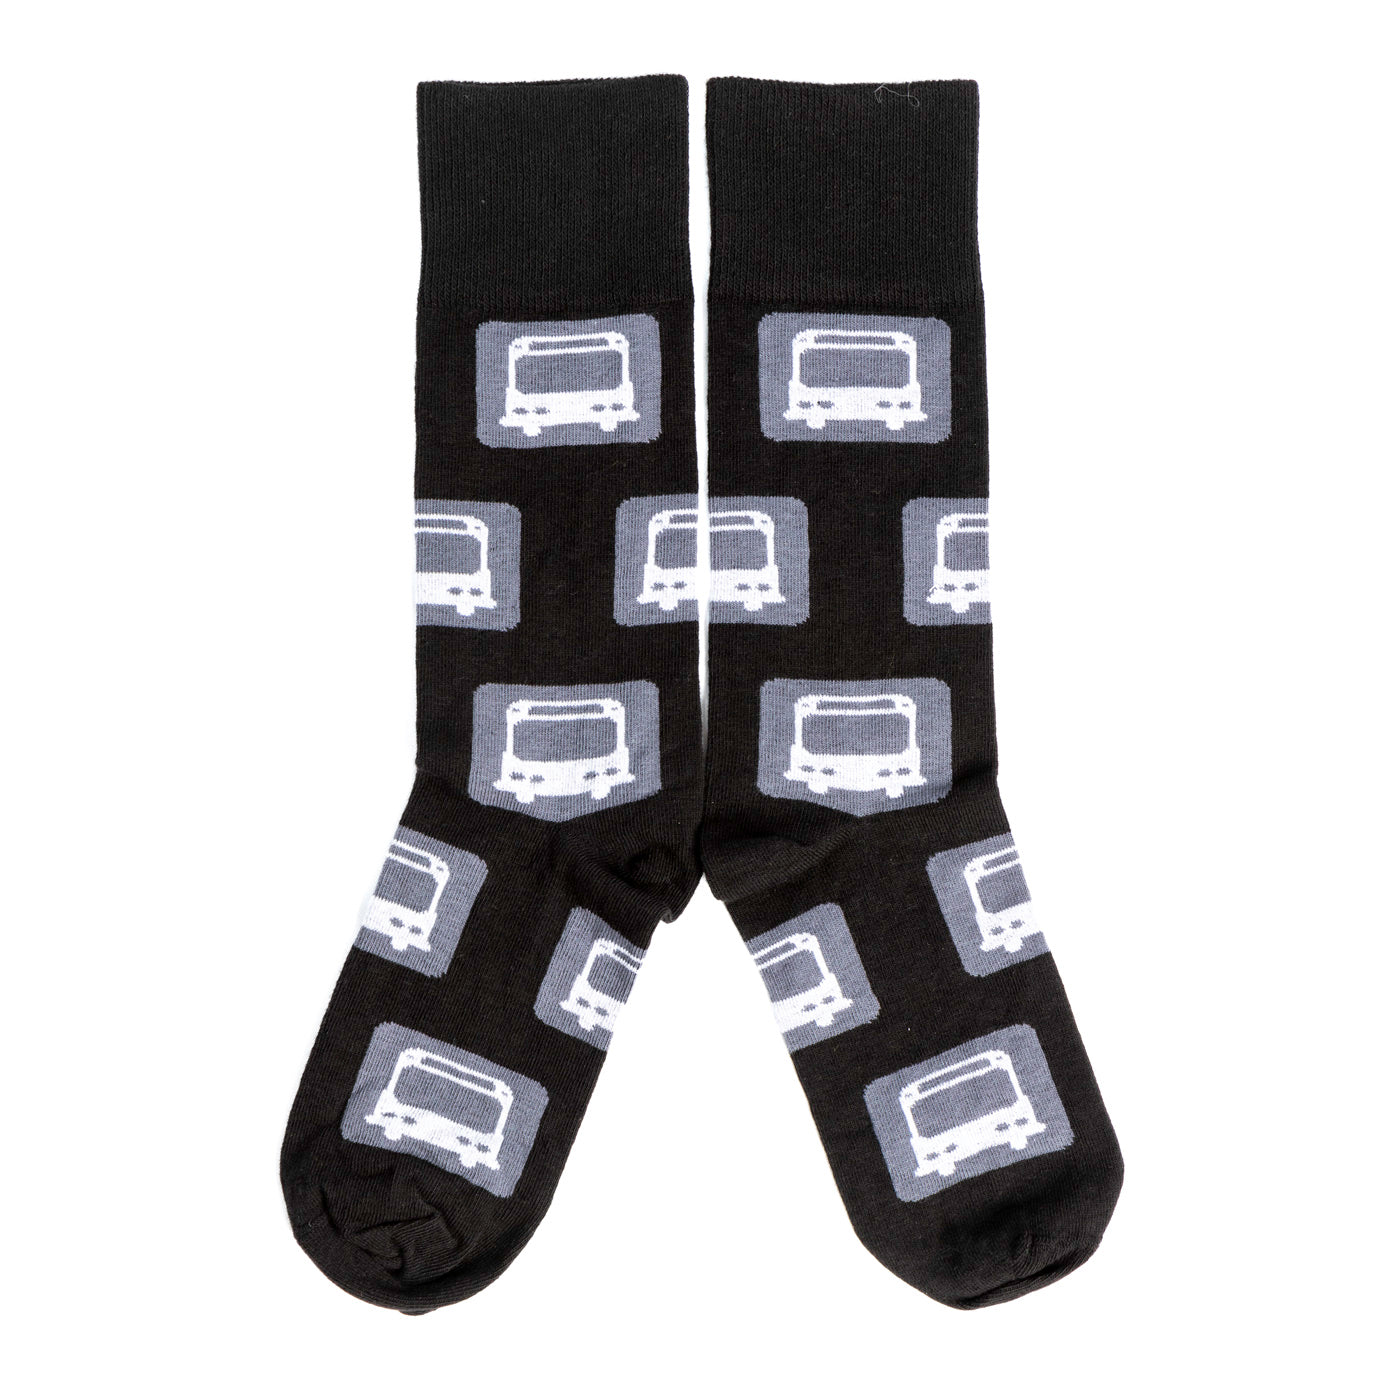 Adult Black Bus Socks